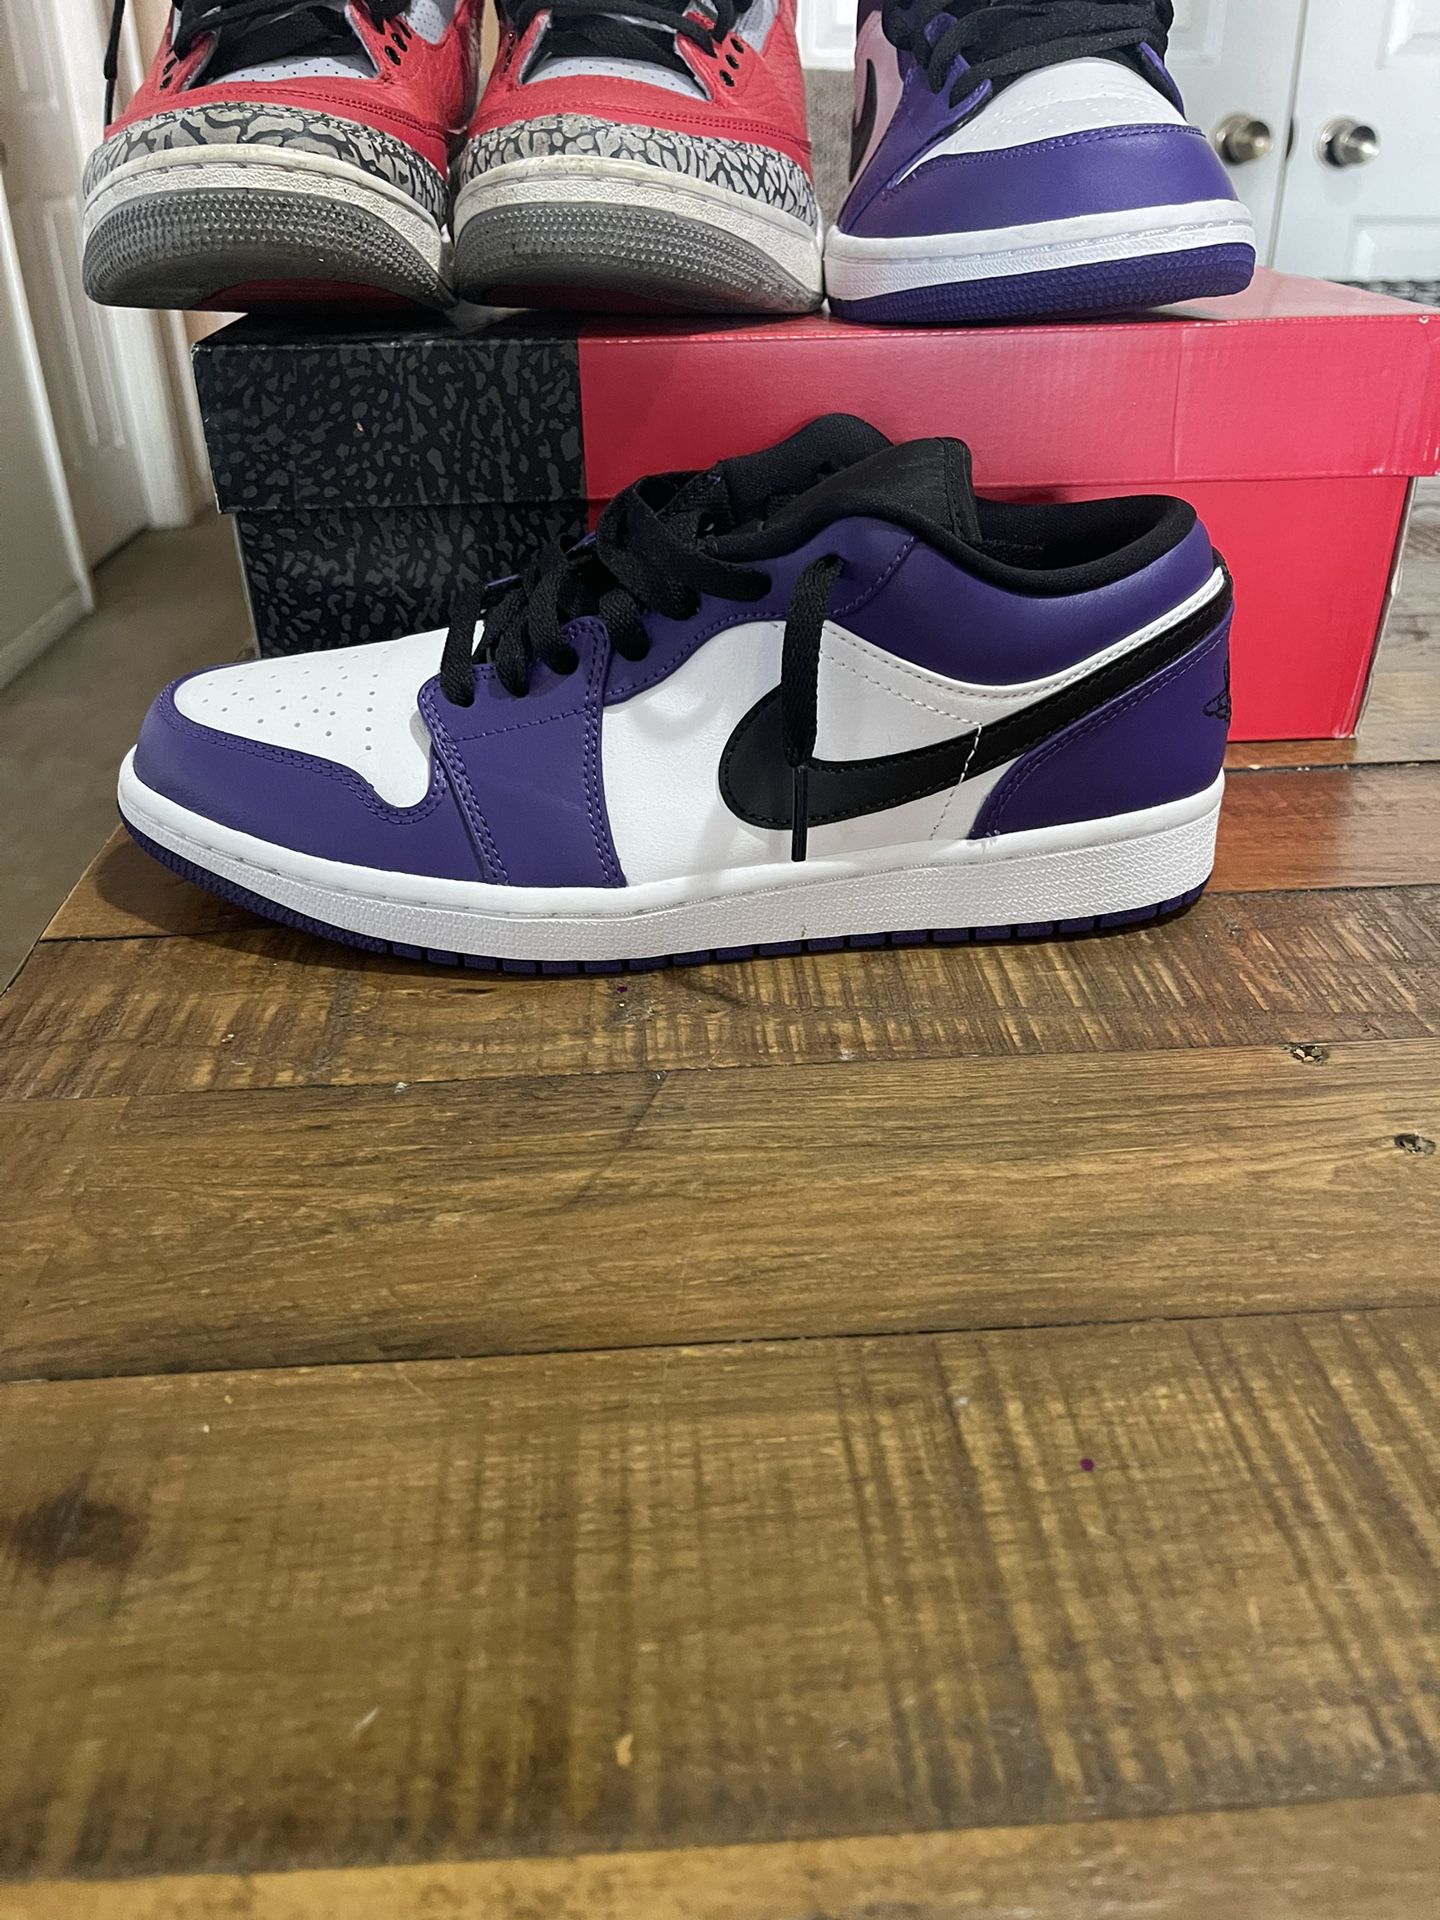 Purple Air Jordan 1 